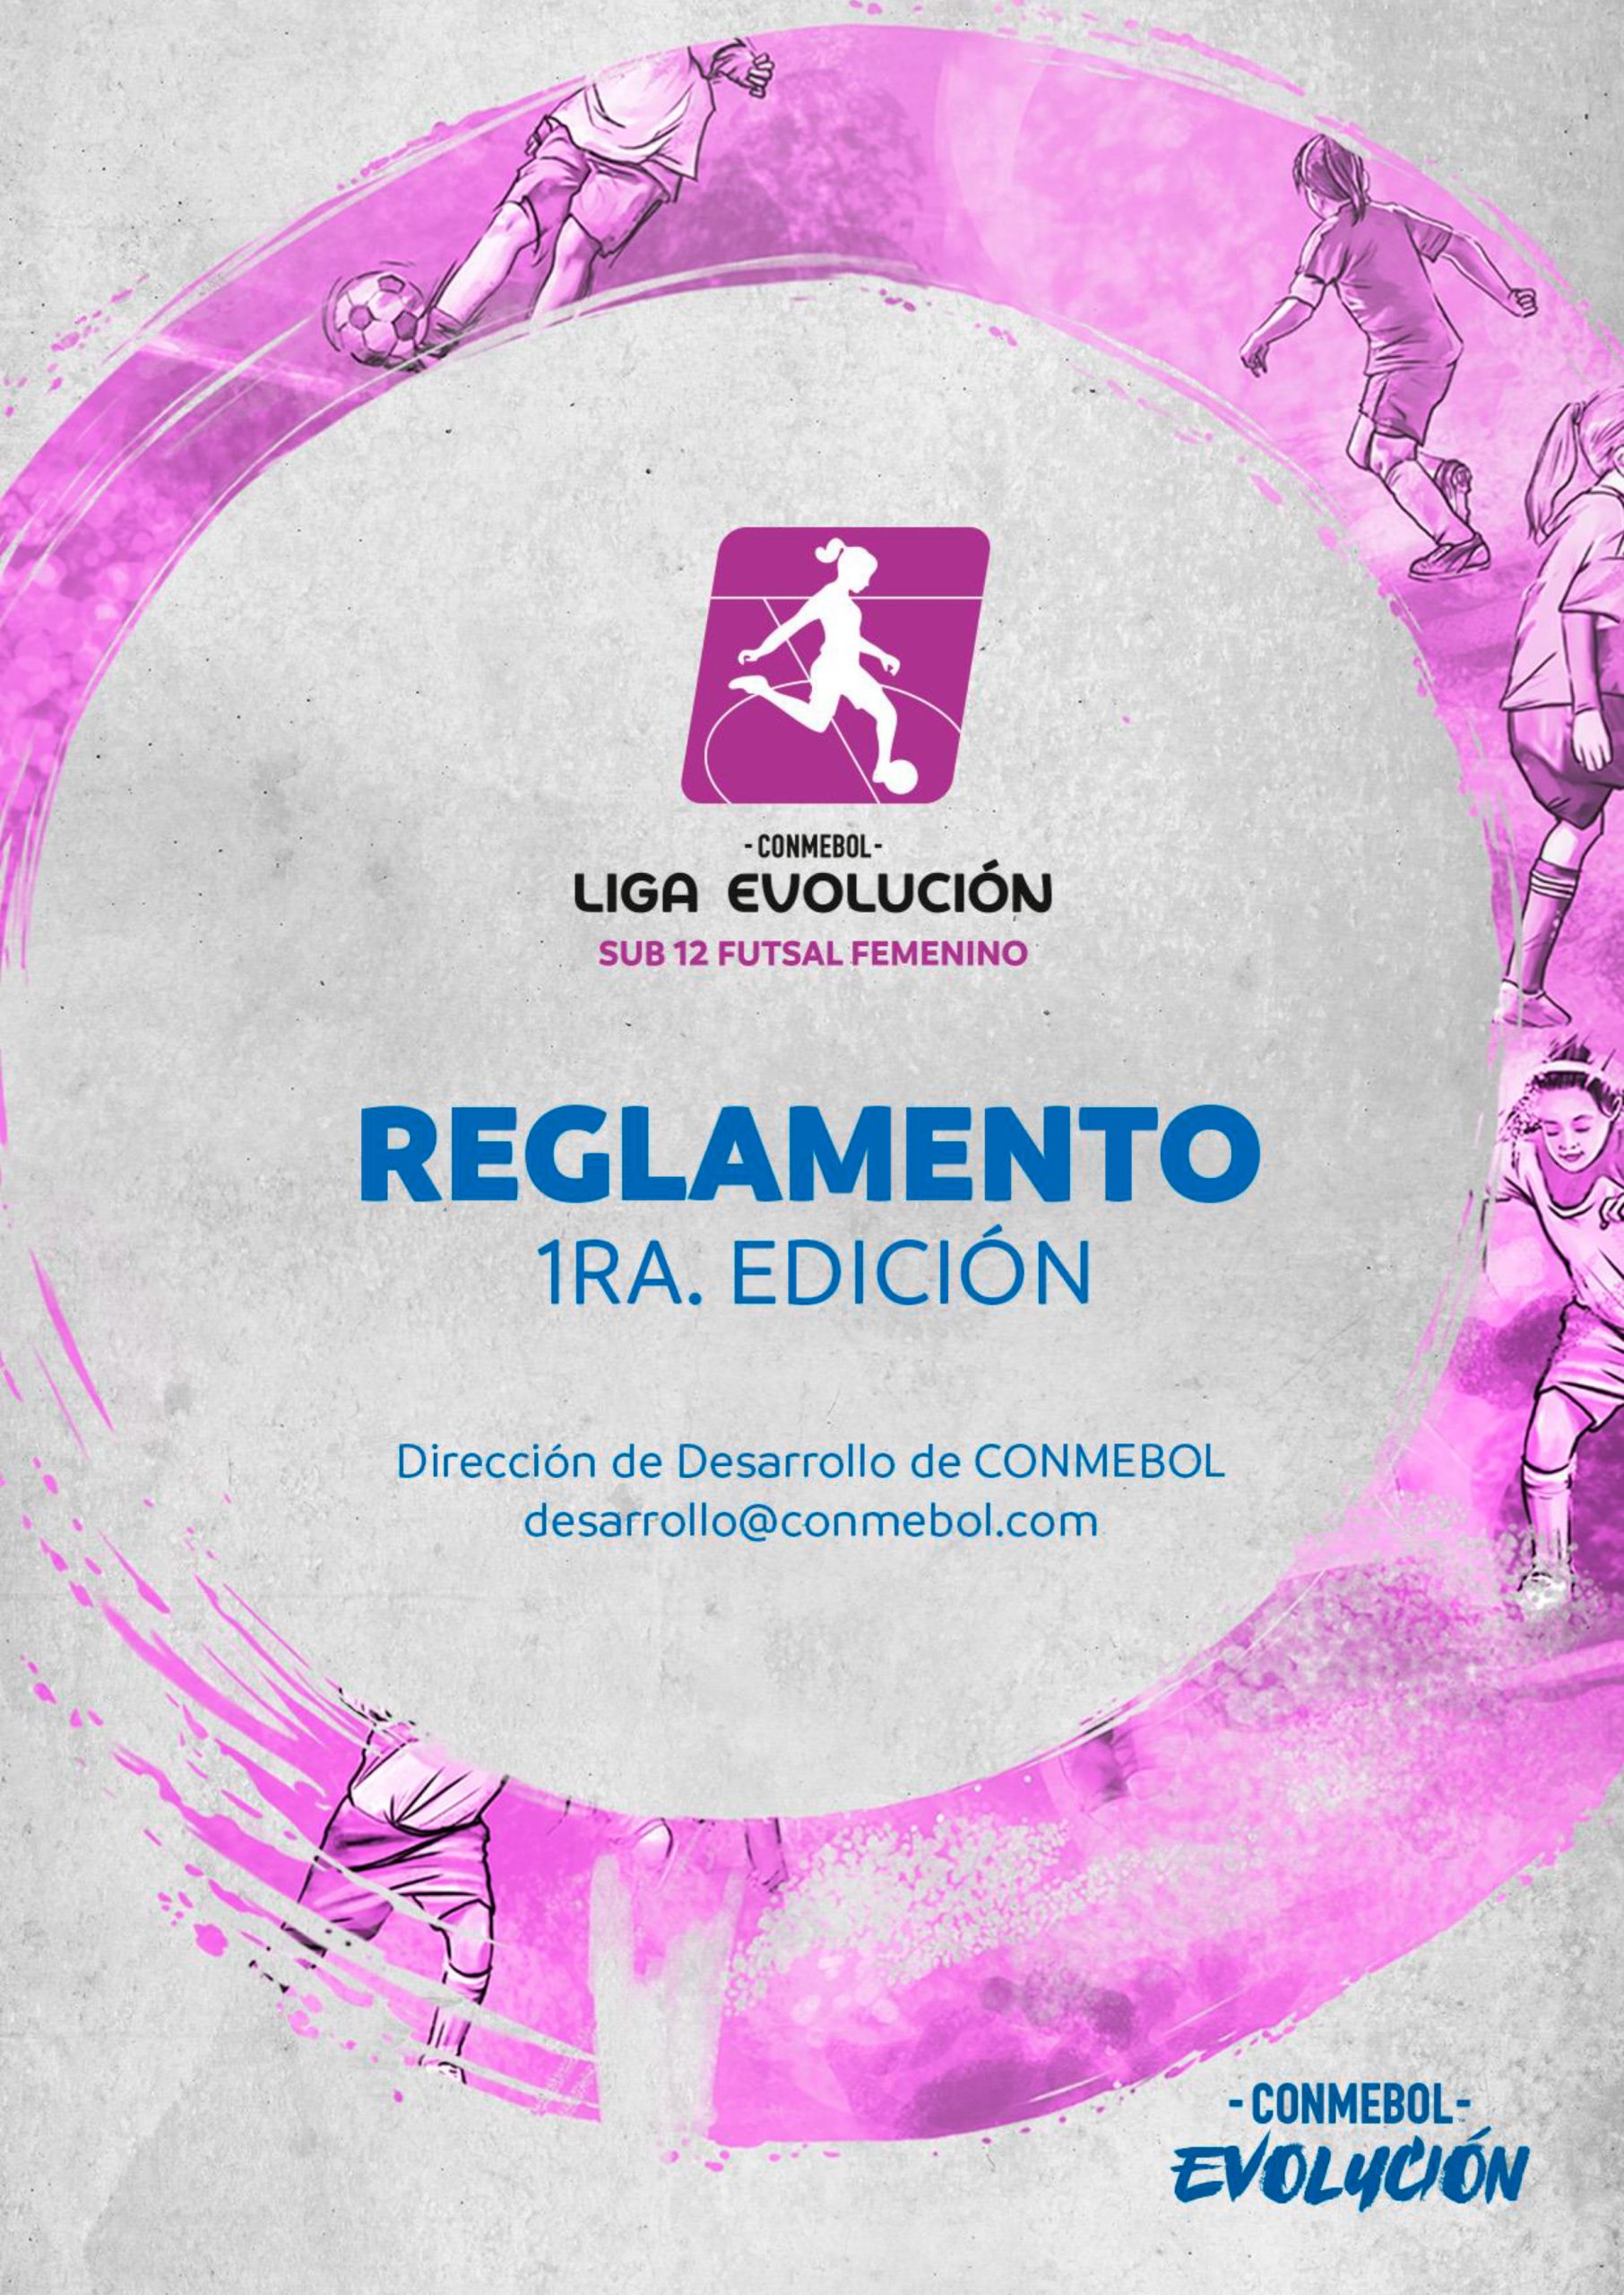 Reglamento CONMEBOL Liga Evolución Sub12 Futsal Femenino CONMEBOL